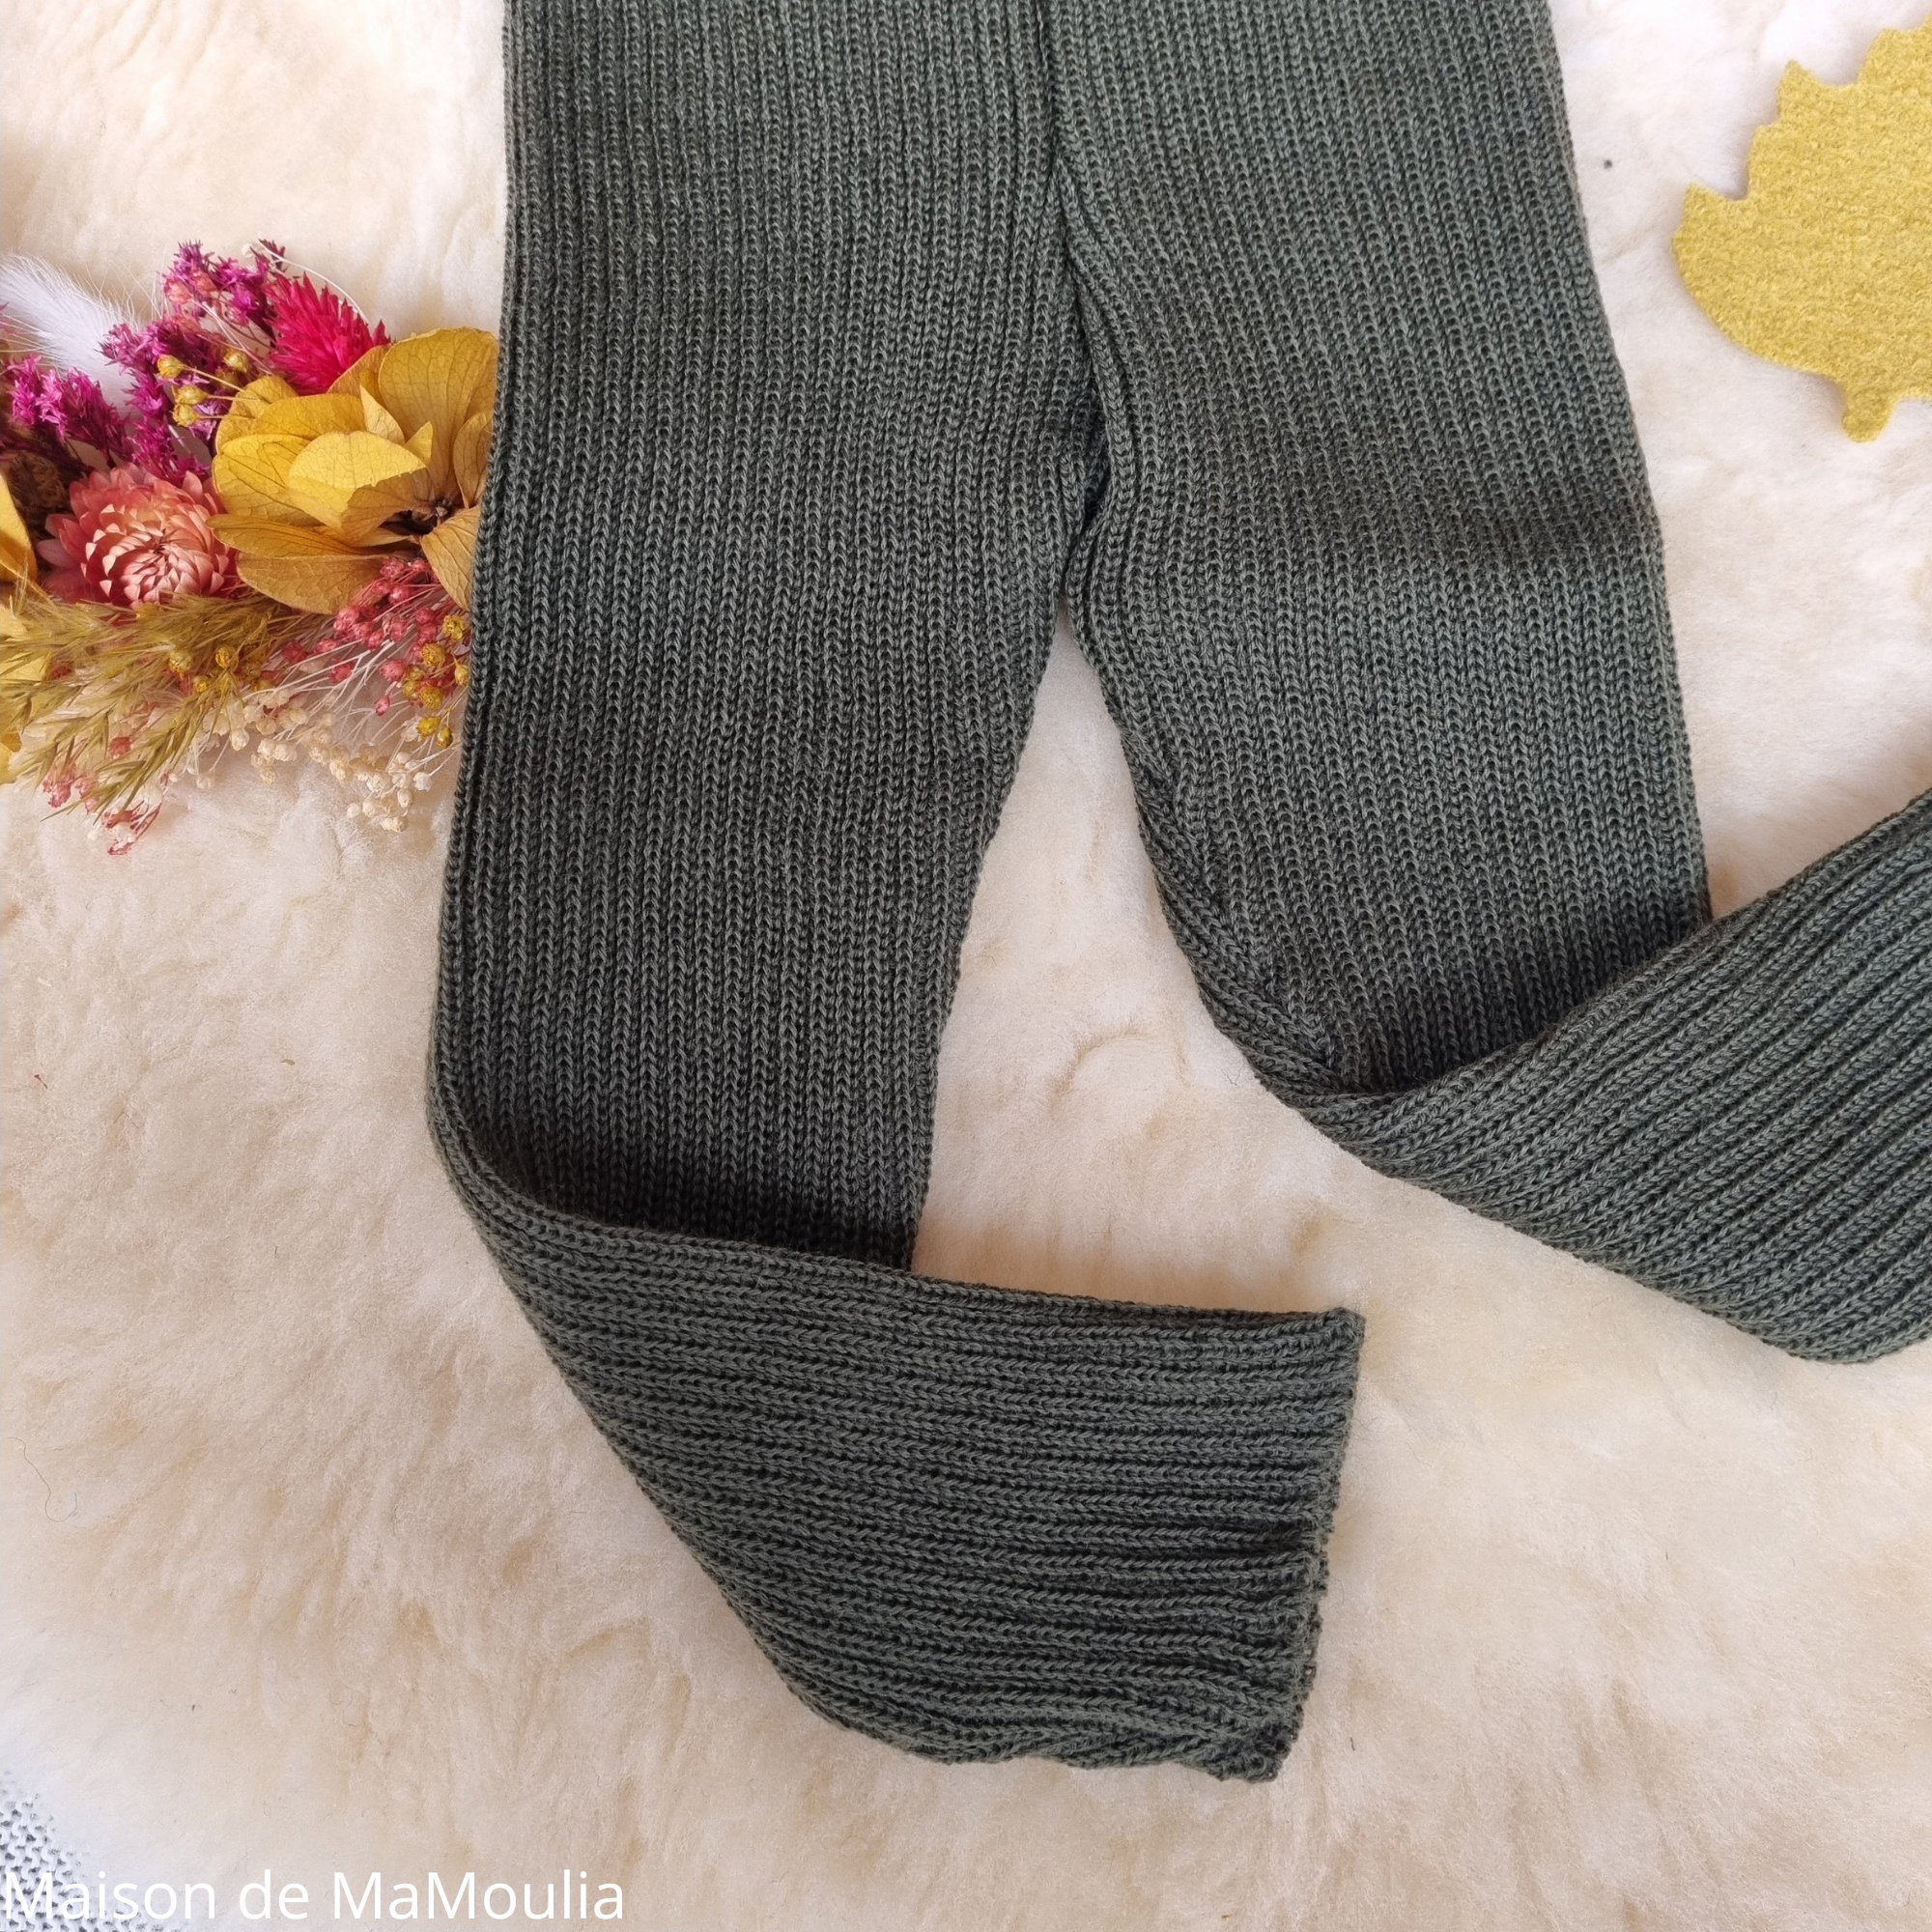 disana-legging-collant-pure-laine-merinos-tricotée-bebe-enfant-maison-de-mamoulia-vert- olive